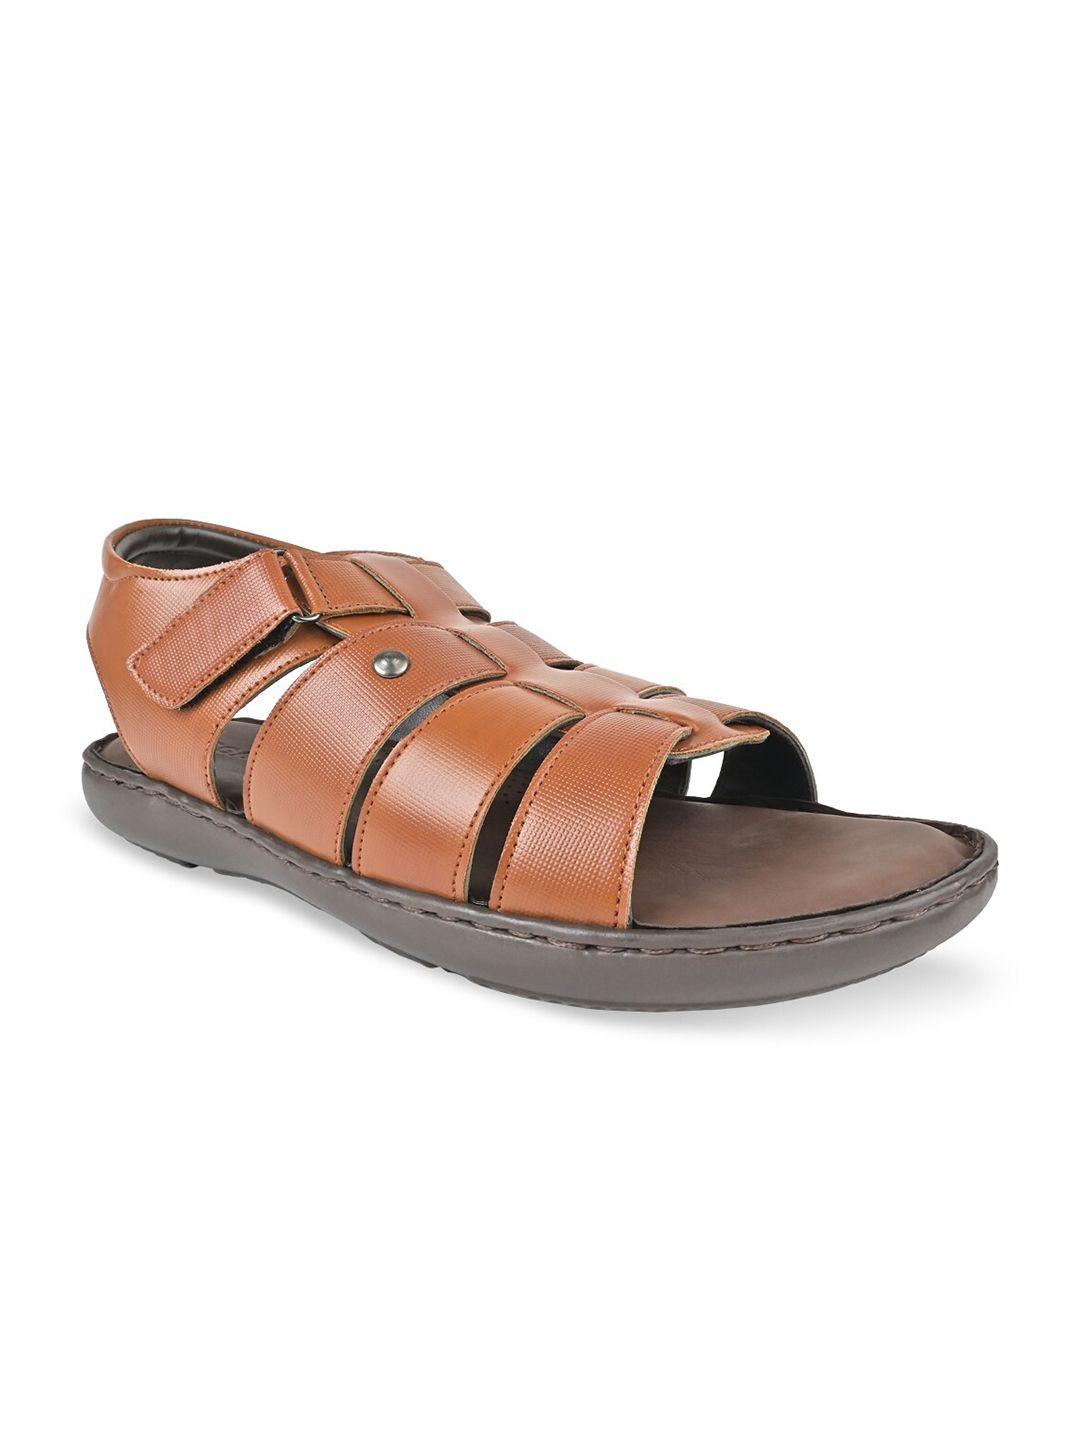 regal men textured comfort sandals